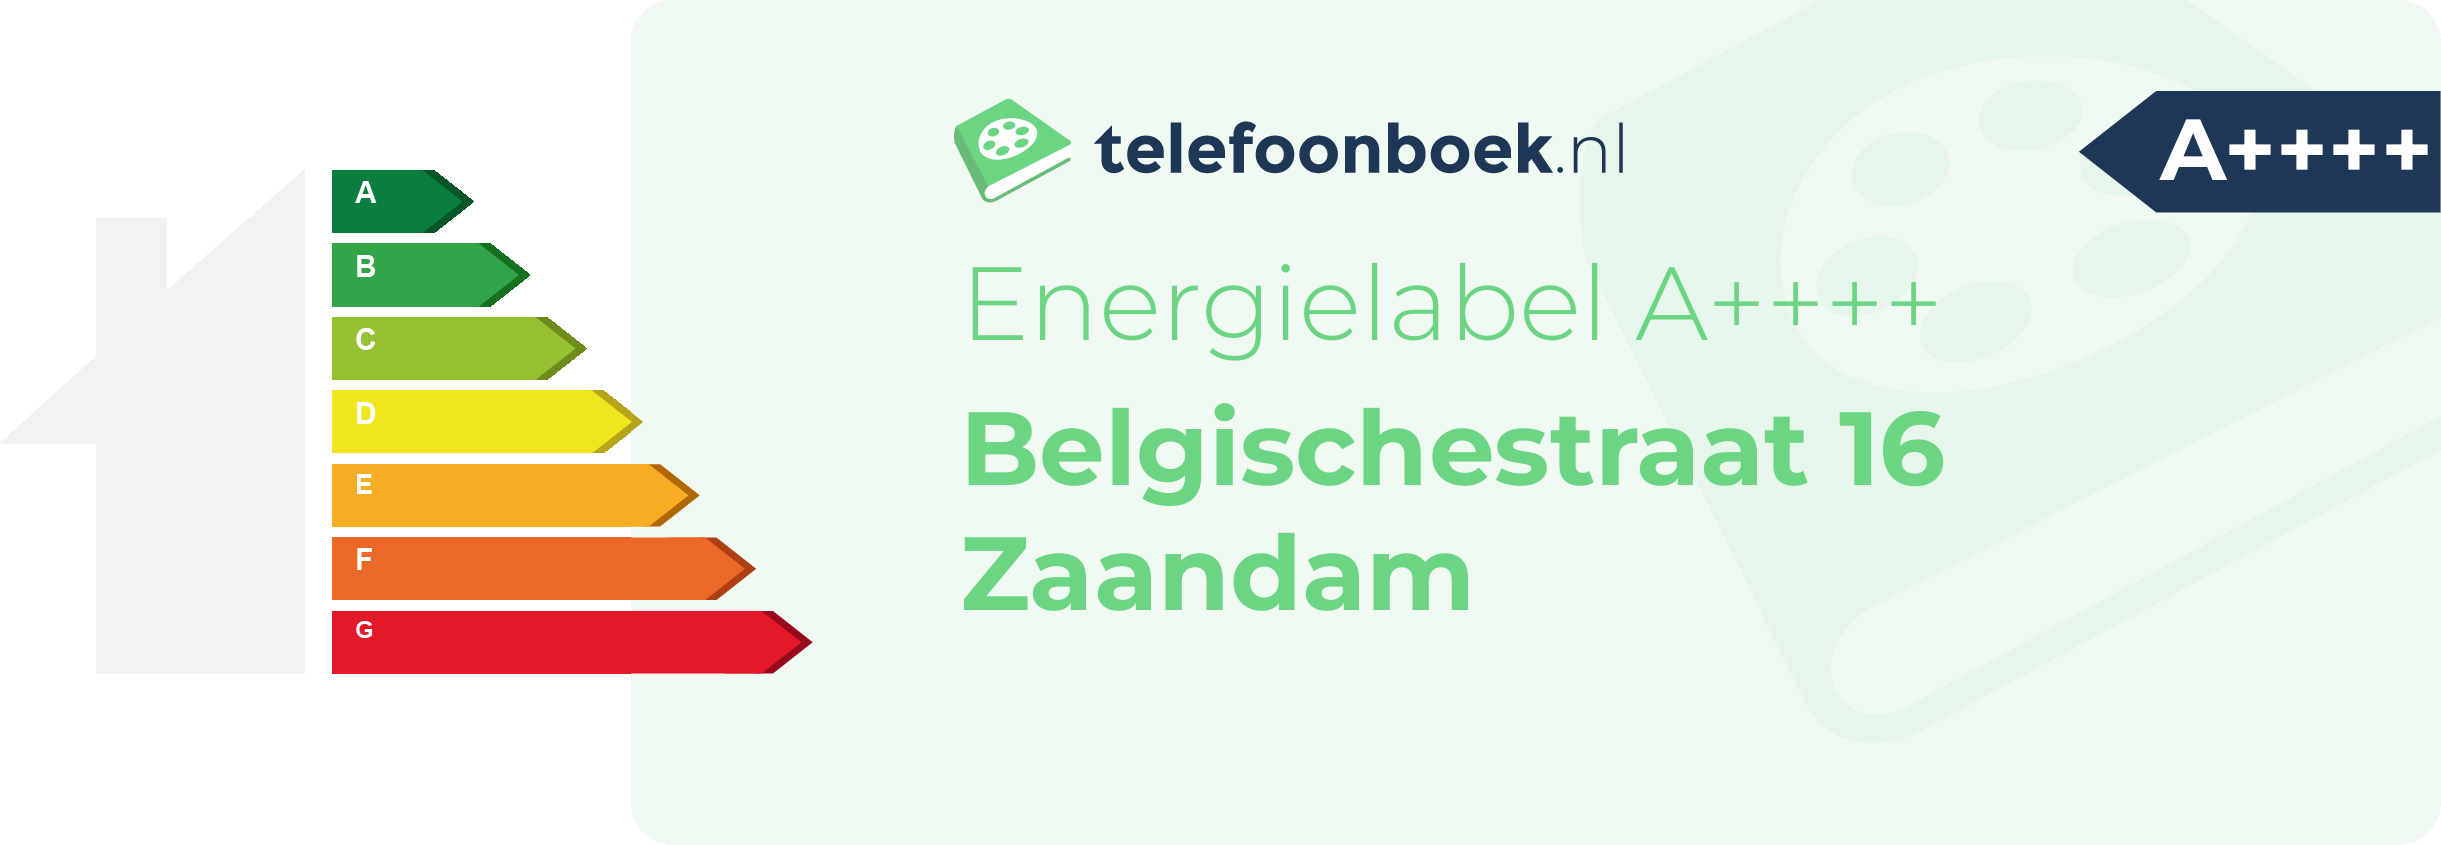 Energielabel Belgischestraat 16 Zaandam